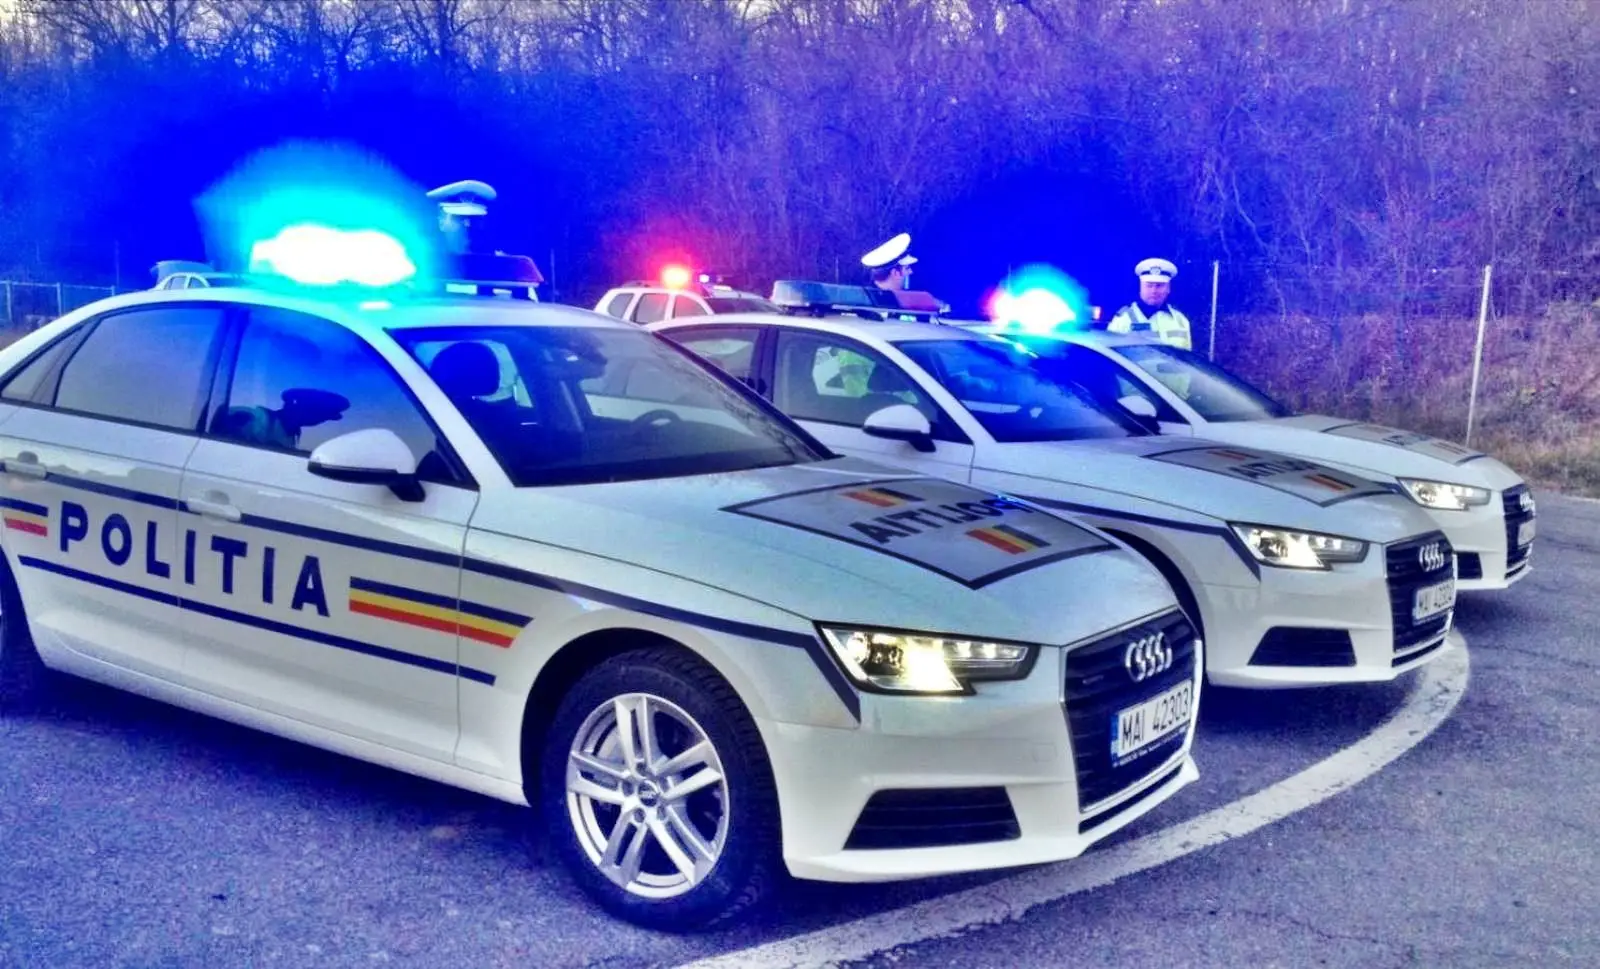 Politie waarschuwt automobilisten, blijft aanwezig op Roemeense wegen